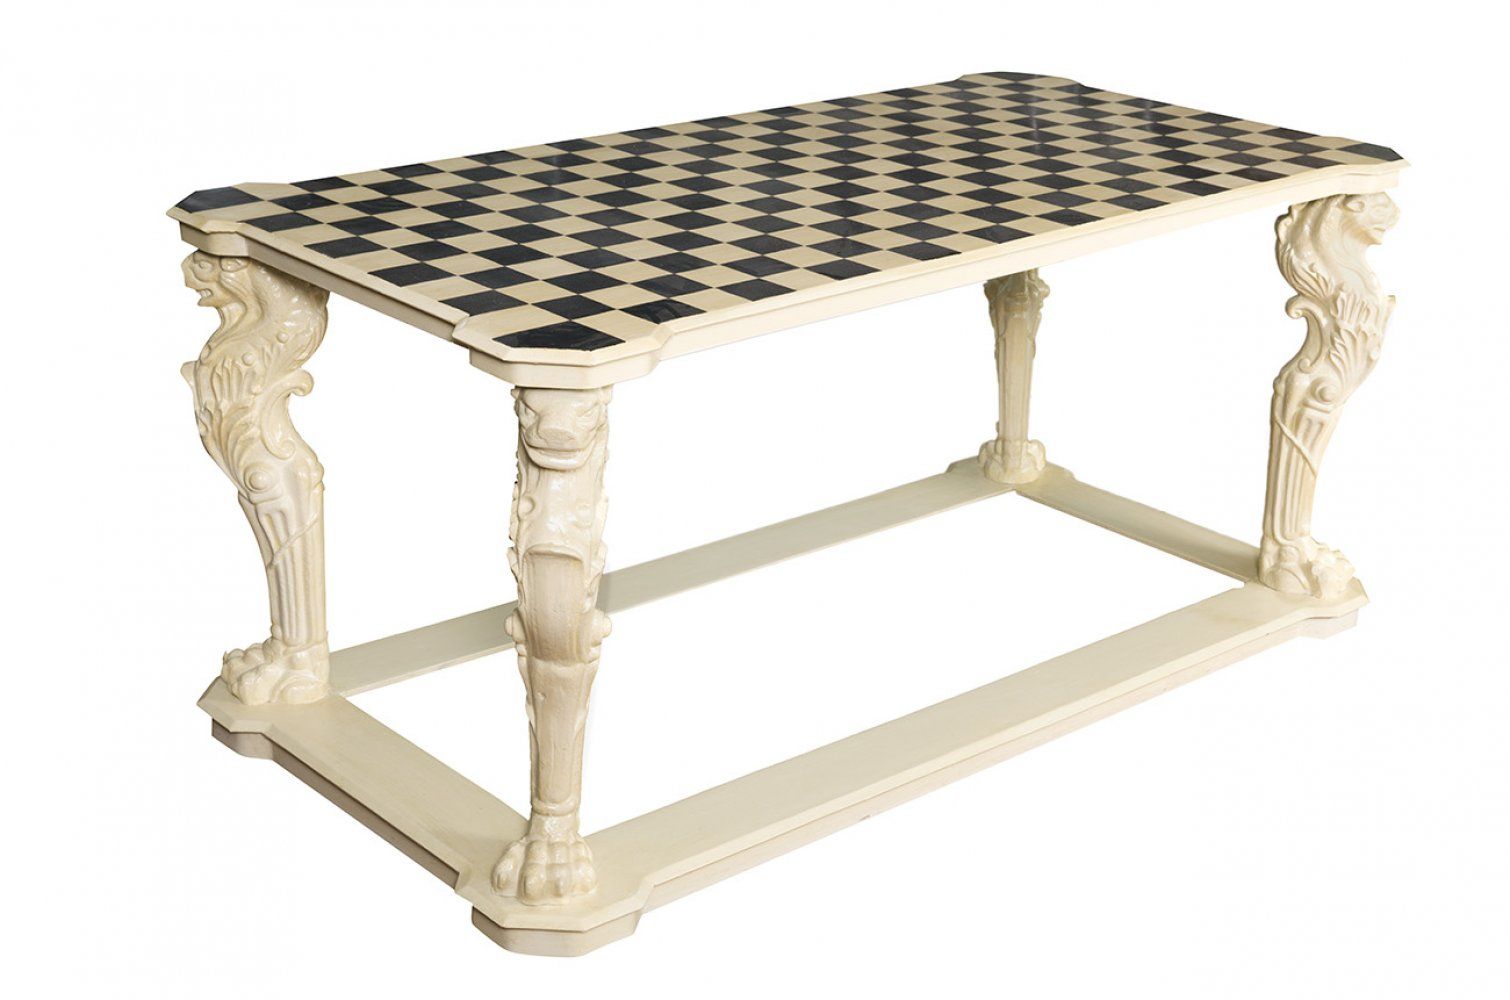 Null Tisch für draußen. Pompejanischer Stil.
Handbemalte Platte.
Beine aus Gusse&hellip;